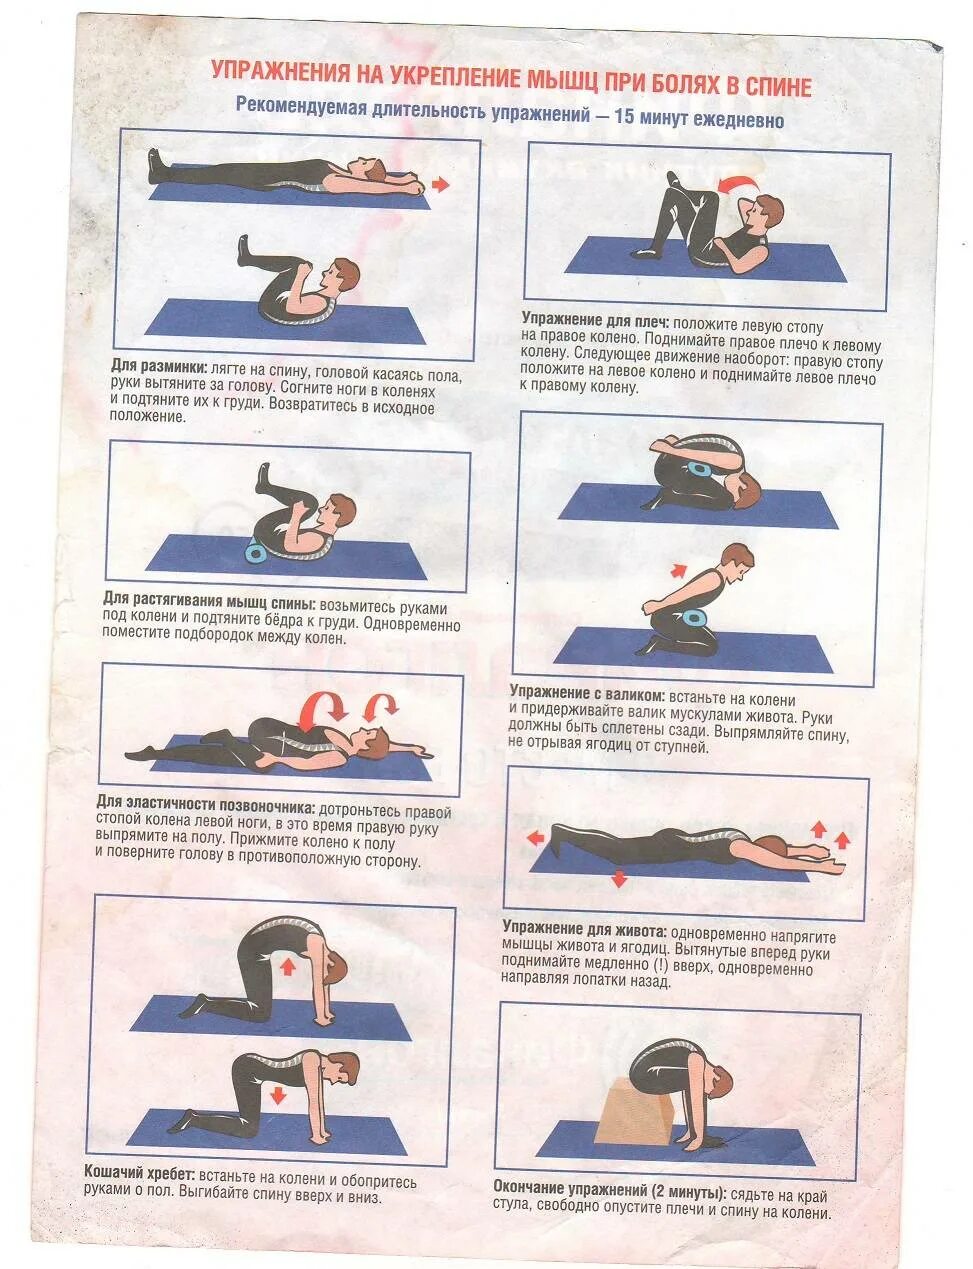 Упражнения для укрепления мышц позвоночника и поясницы. Упражнения ЛФК для спины при болях в пояснице. Комплекс упражнений при боли в спине и пояснице. Гимнастика для спины при болях в пояснице для мужчин.